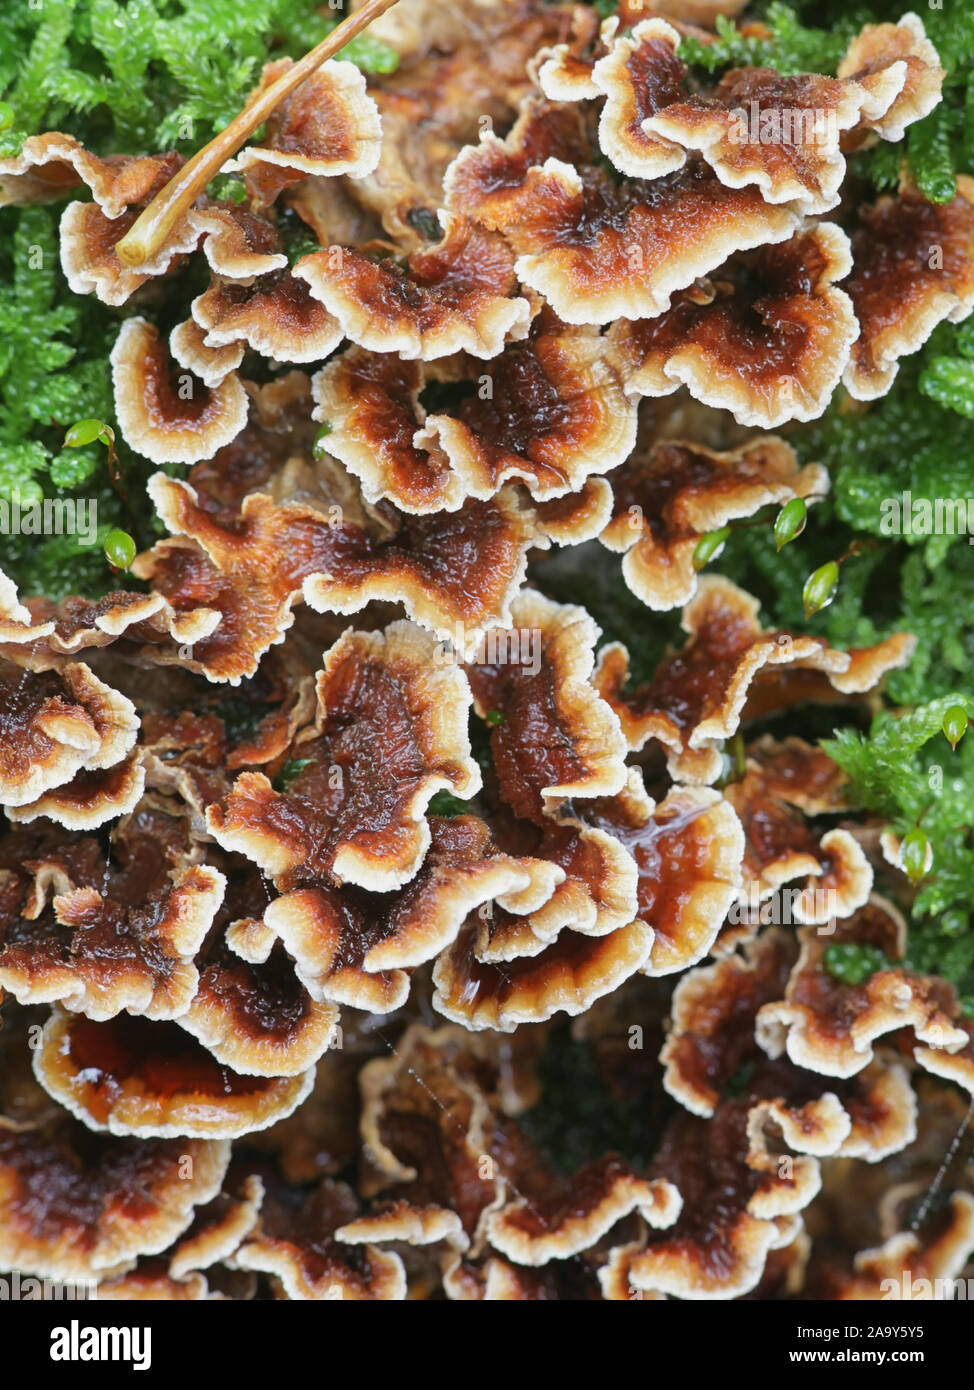 Stereum gausapatum, dite purge croûte Chêne, champignon sauvage de la Finlande Banque D'Images